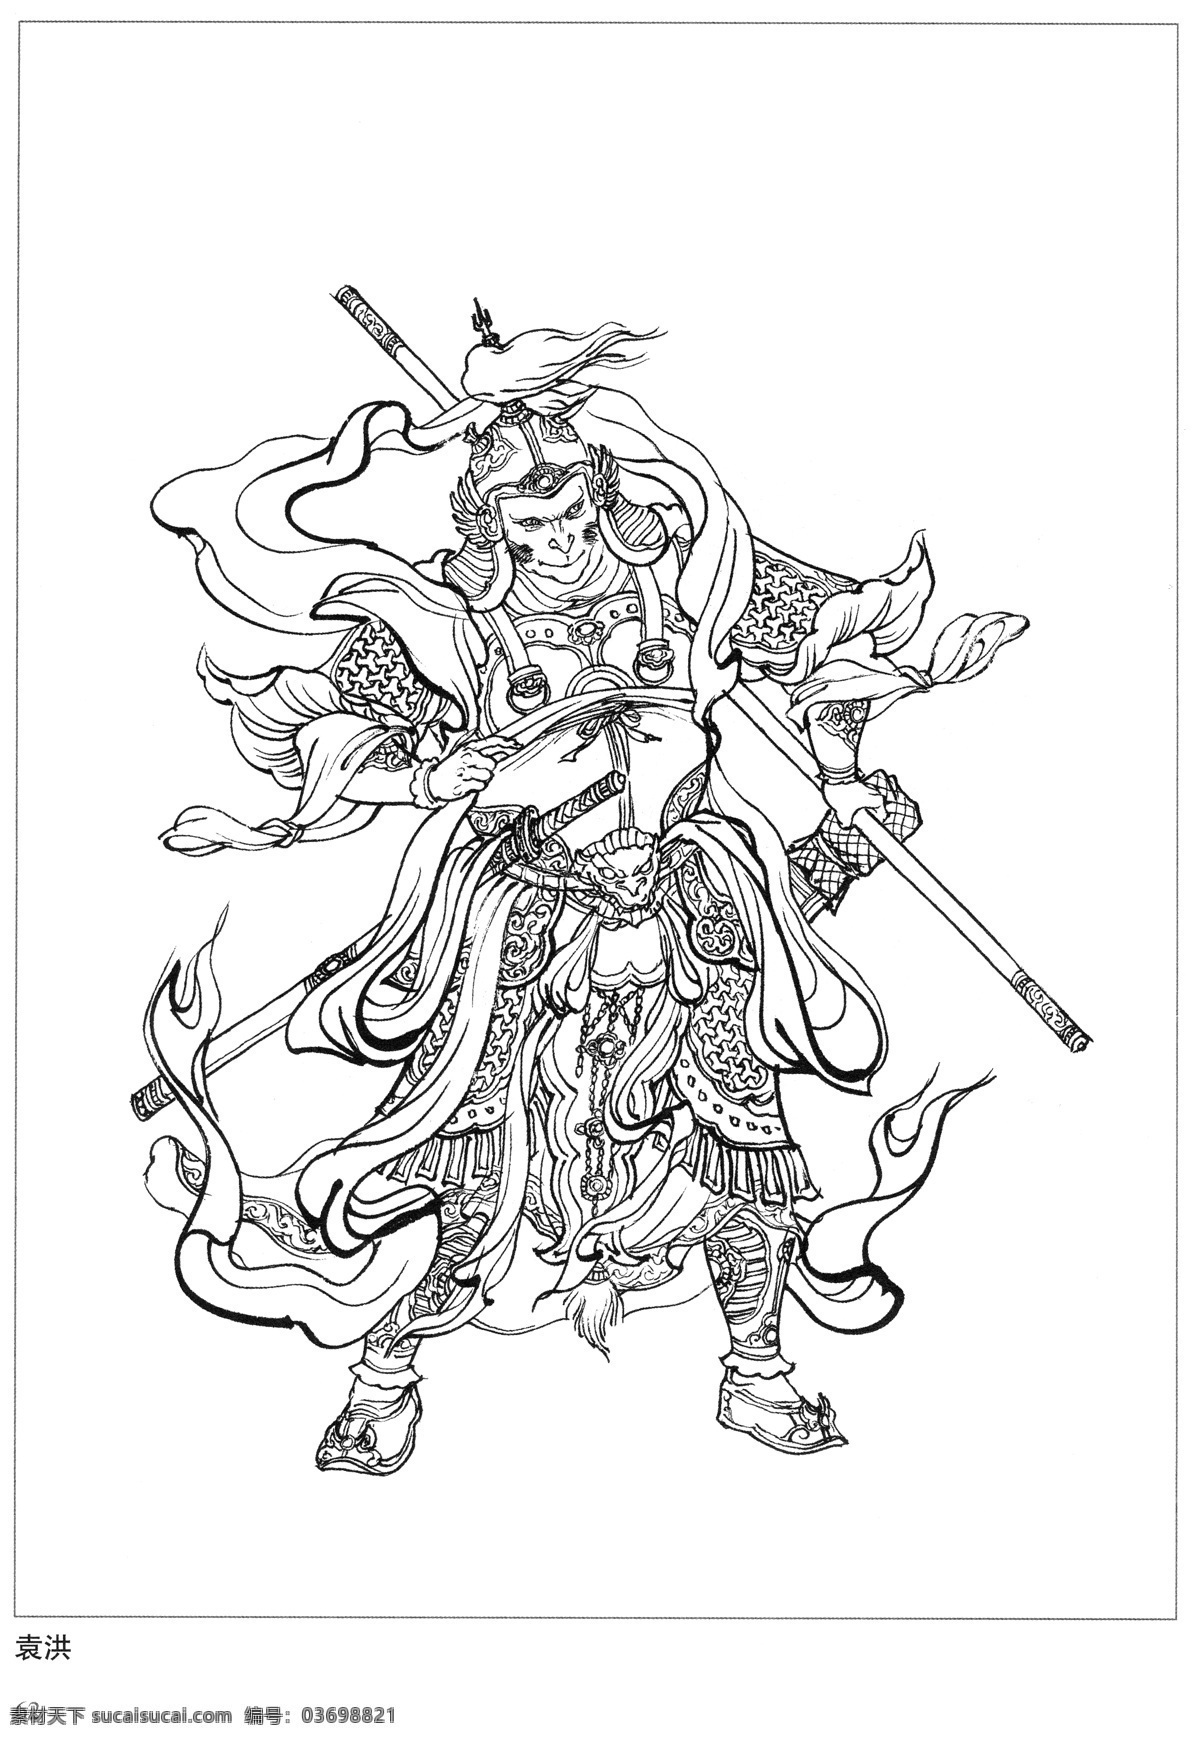 袁洪 封神演义 古代 神仙 白描 人物 图 文化艺术 传统文化